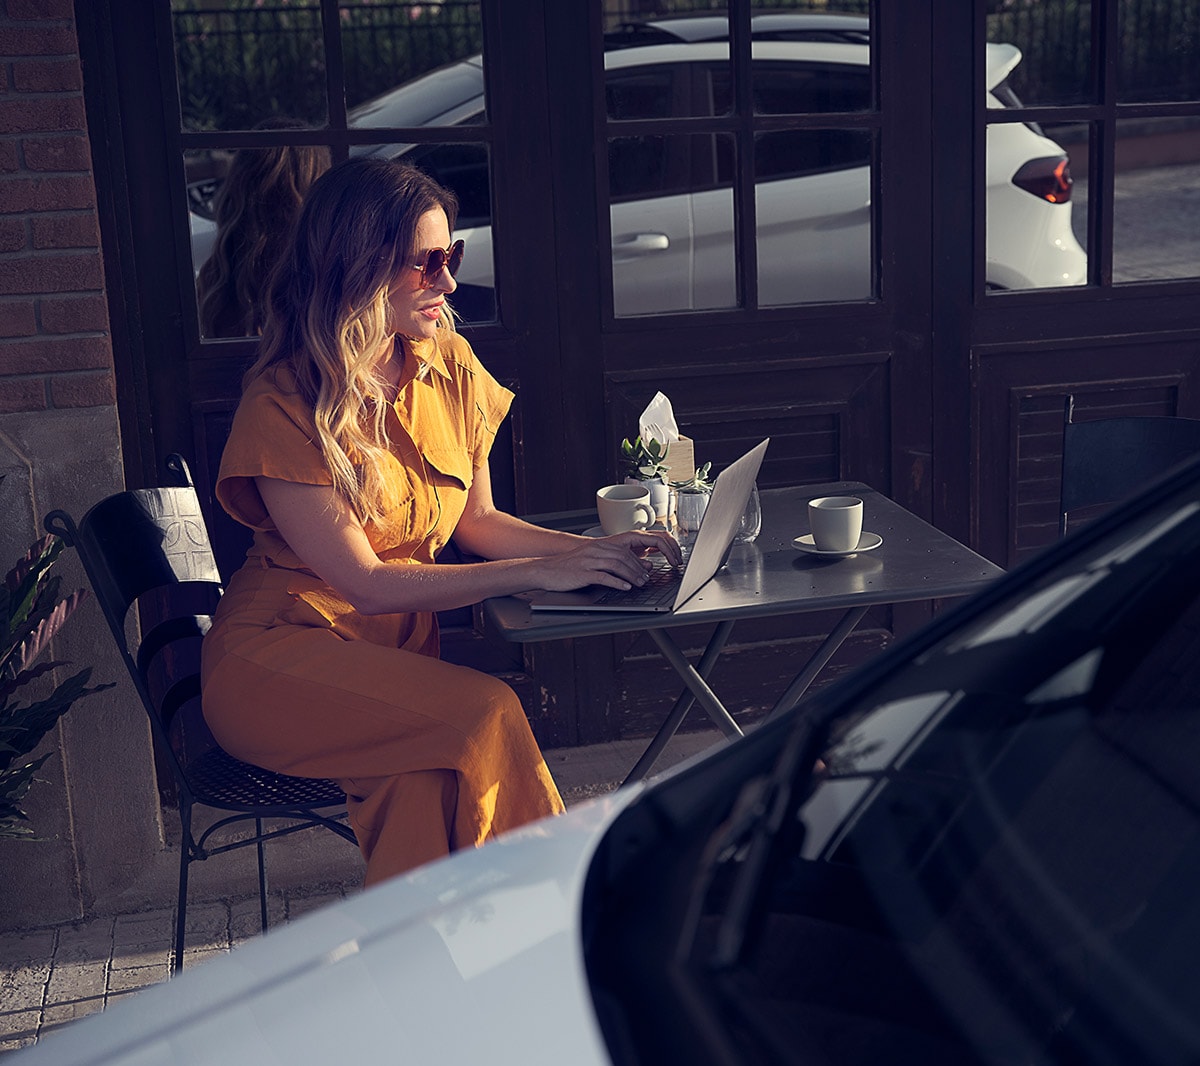 Ford Fiesta couleur blanche. Vue détaillée de l’avant, stationnant devant un café avec une femme à l’arrière-plan.